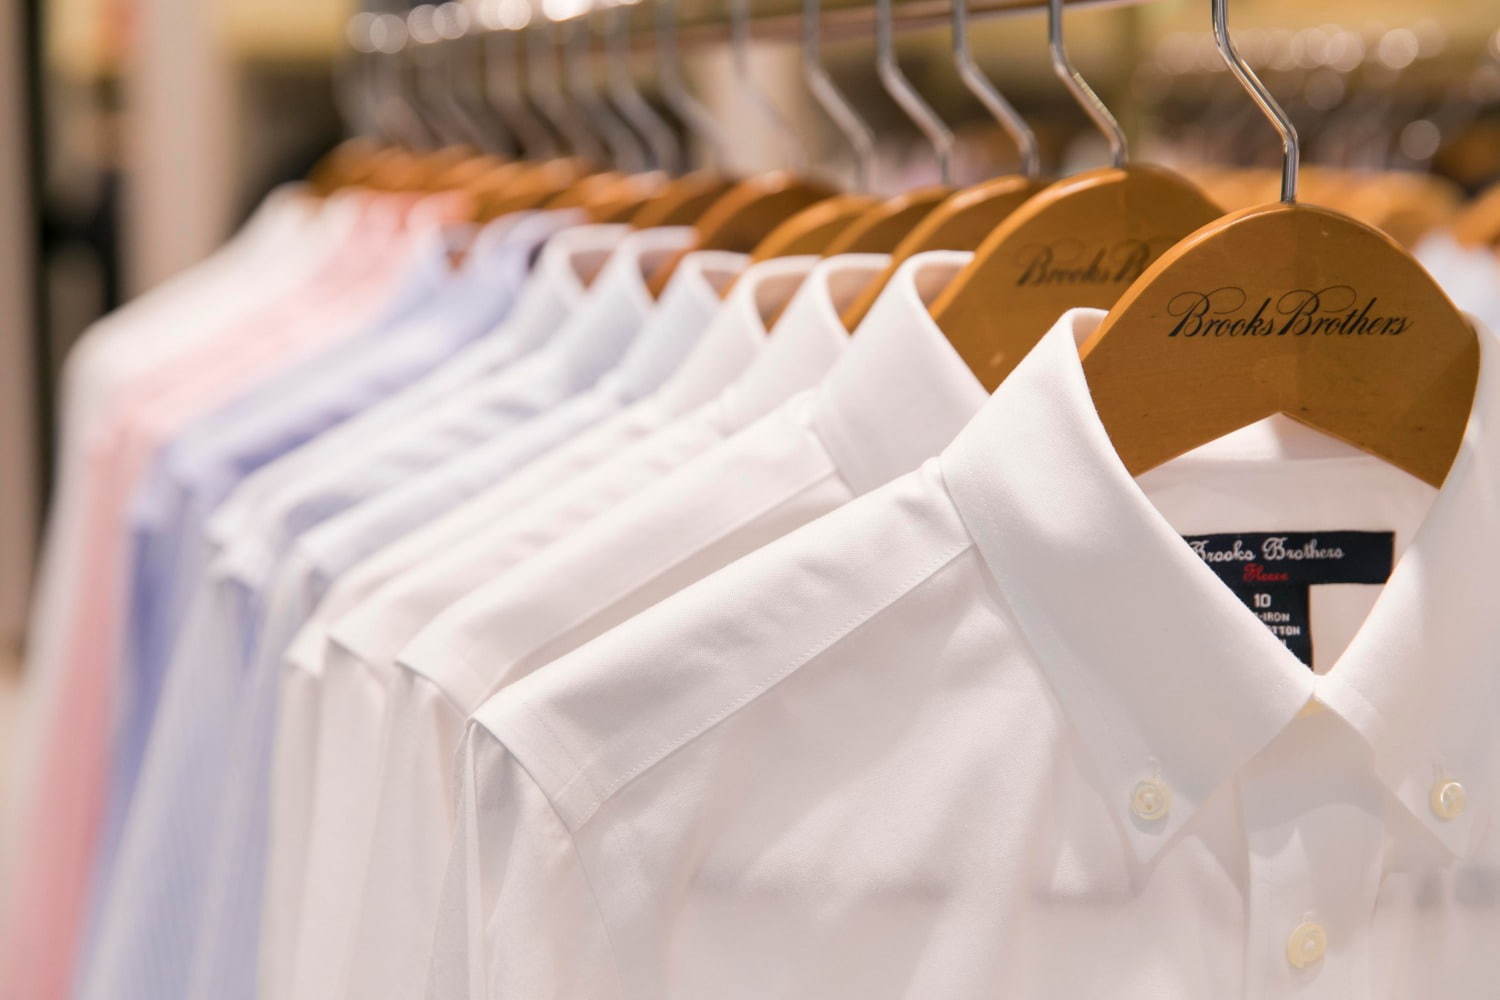 ブルックス ブラザーズの新店舗が表参道にオープン シャツカスタマイズの限定スペース設置 ファッションプレス